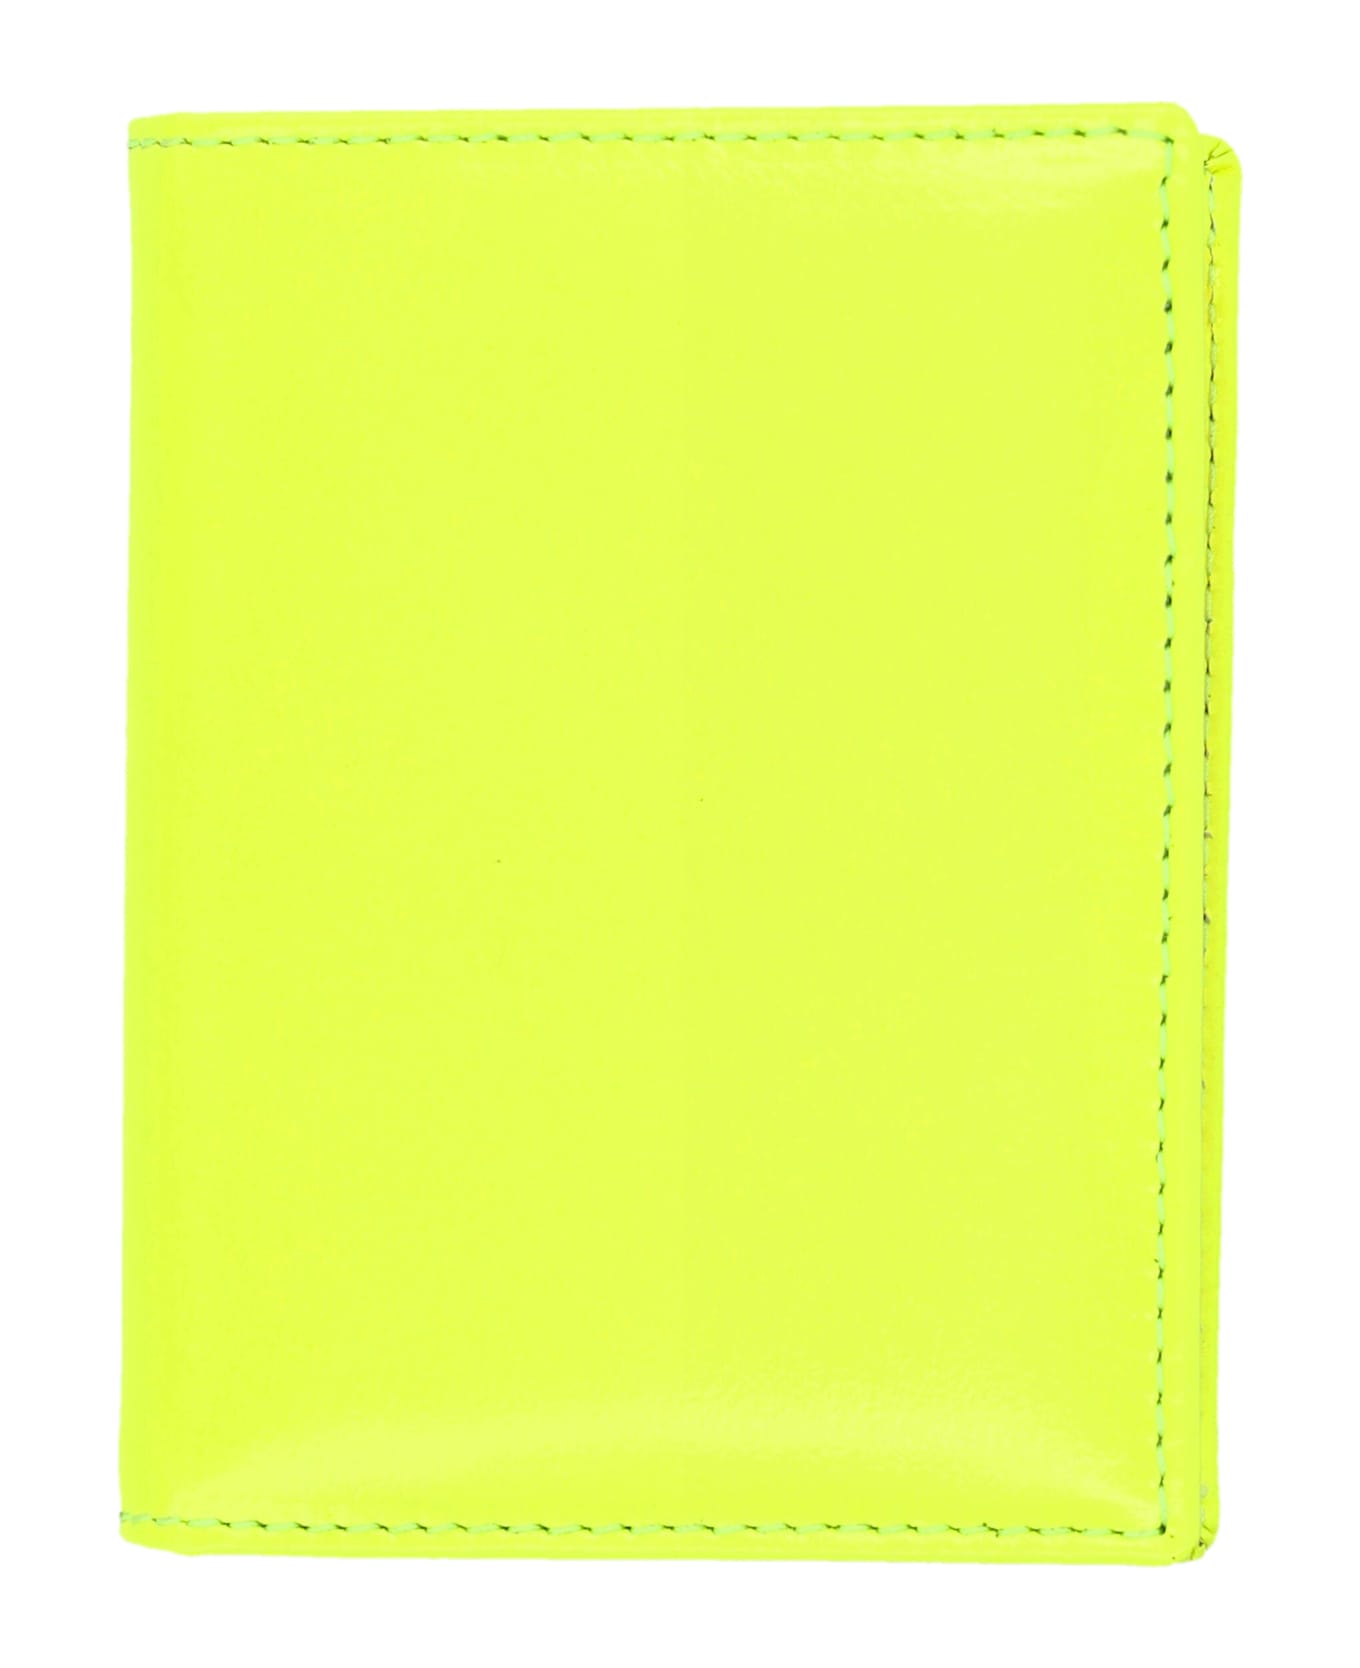 Comme des Garçons Wallet Super Fluo Cardholder - YELLOW/LIGHT ORANGE 財布